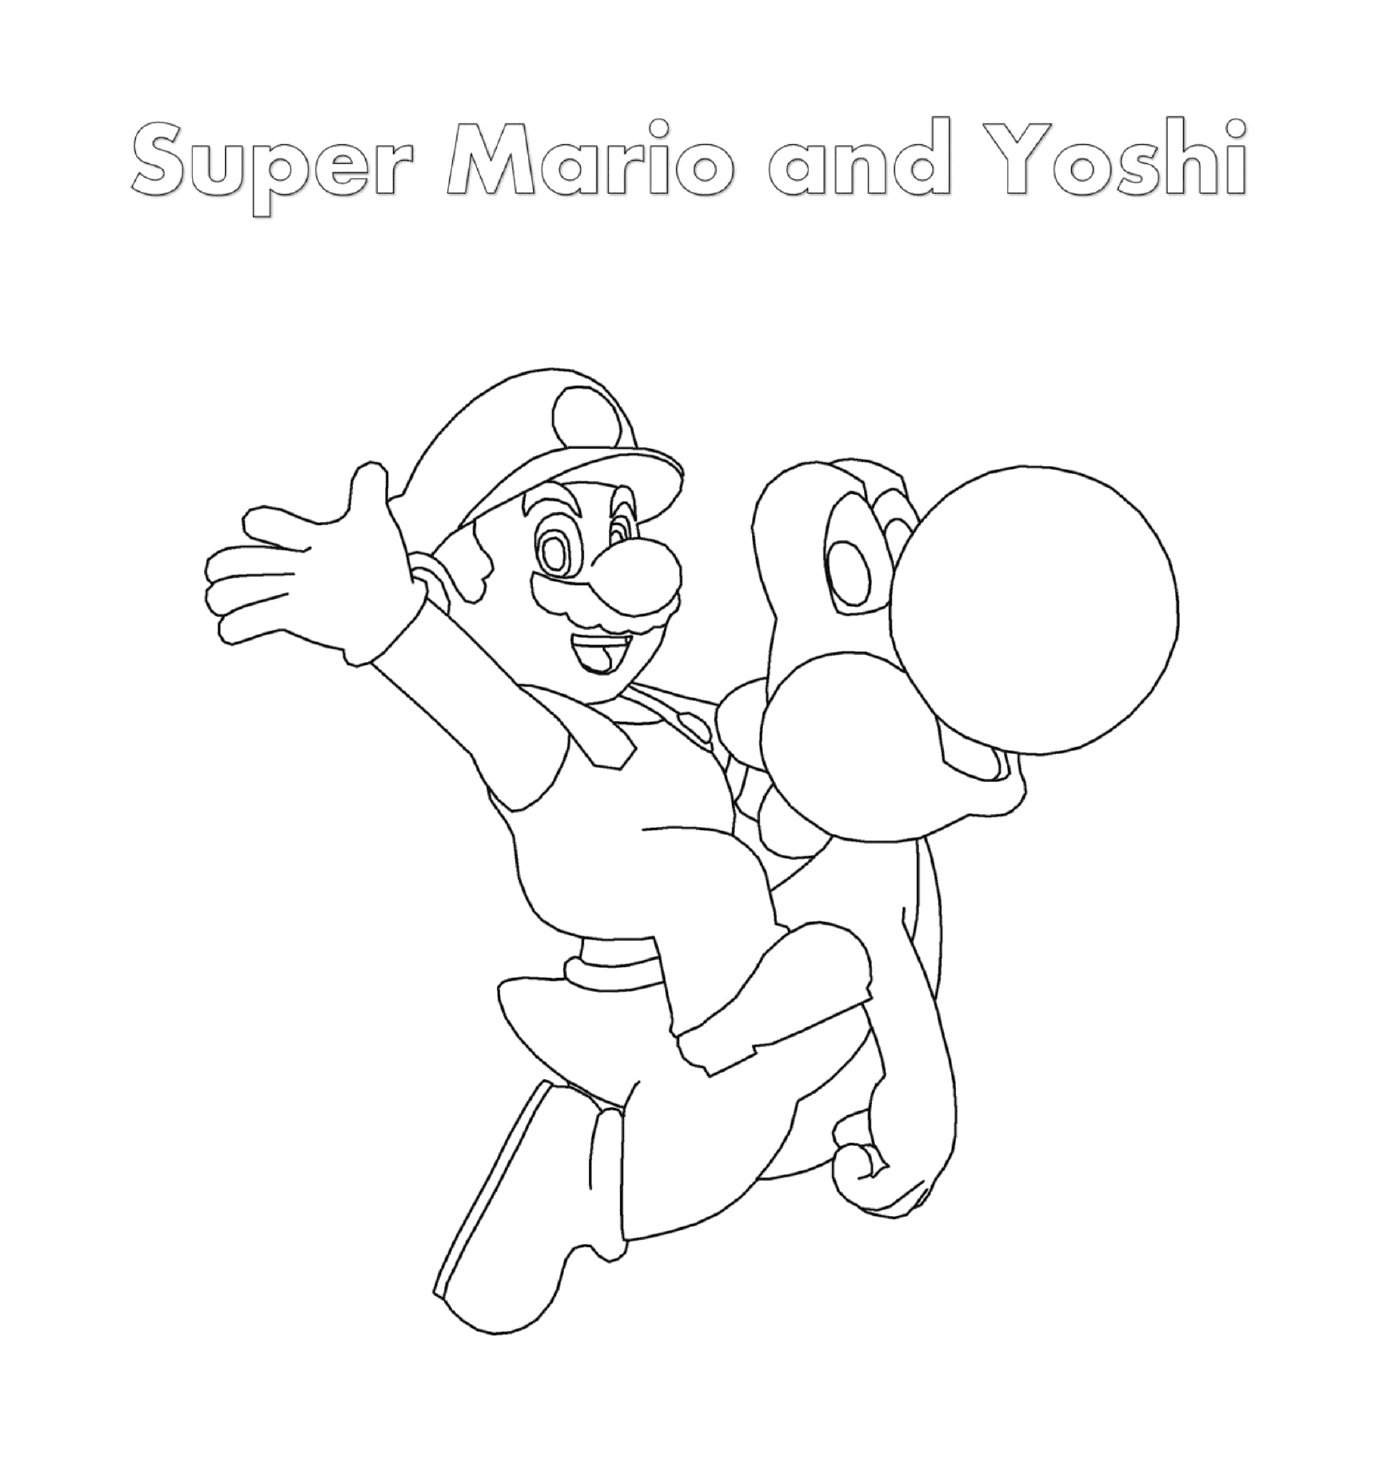  Super Mario und Yoshi mit einer Person, die eine Kugel hält 